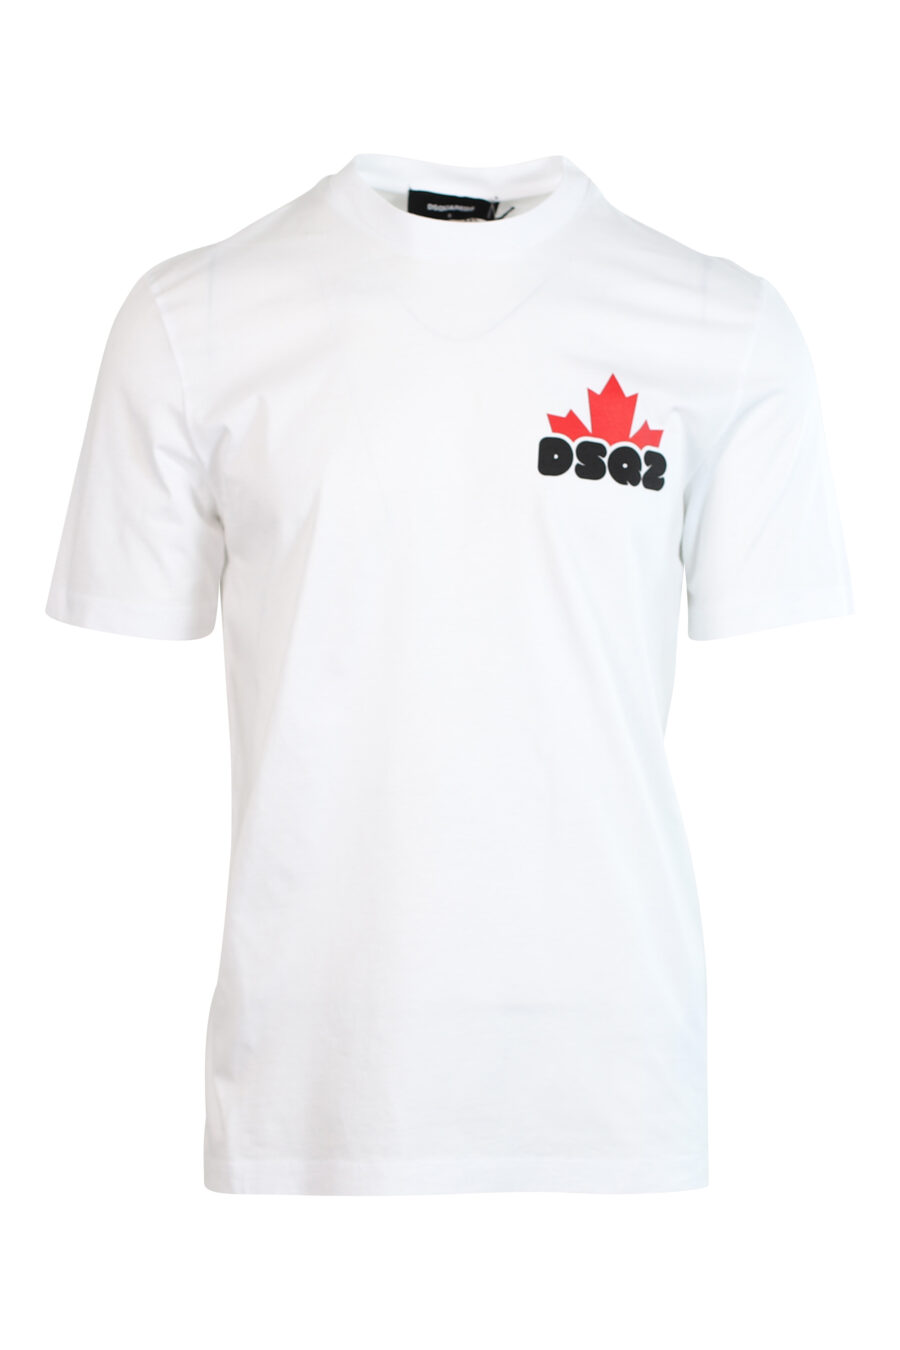 T-shirt branca com minilogo preto "bold" e folha laranja - 8052134990148